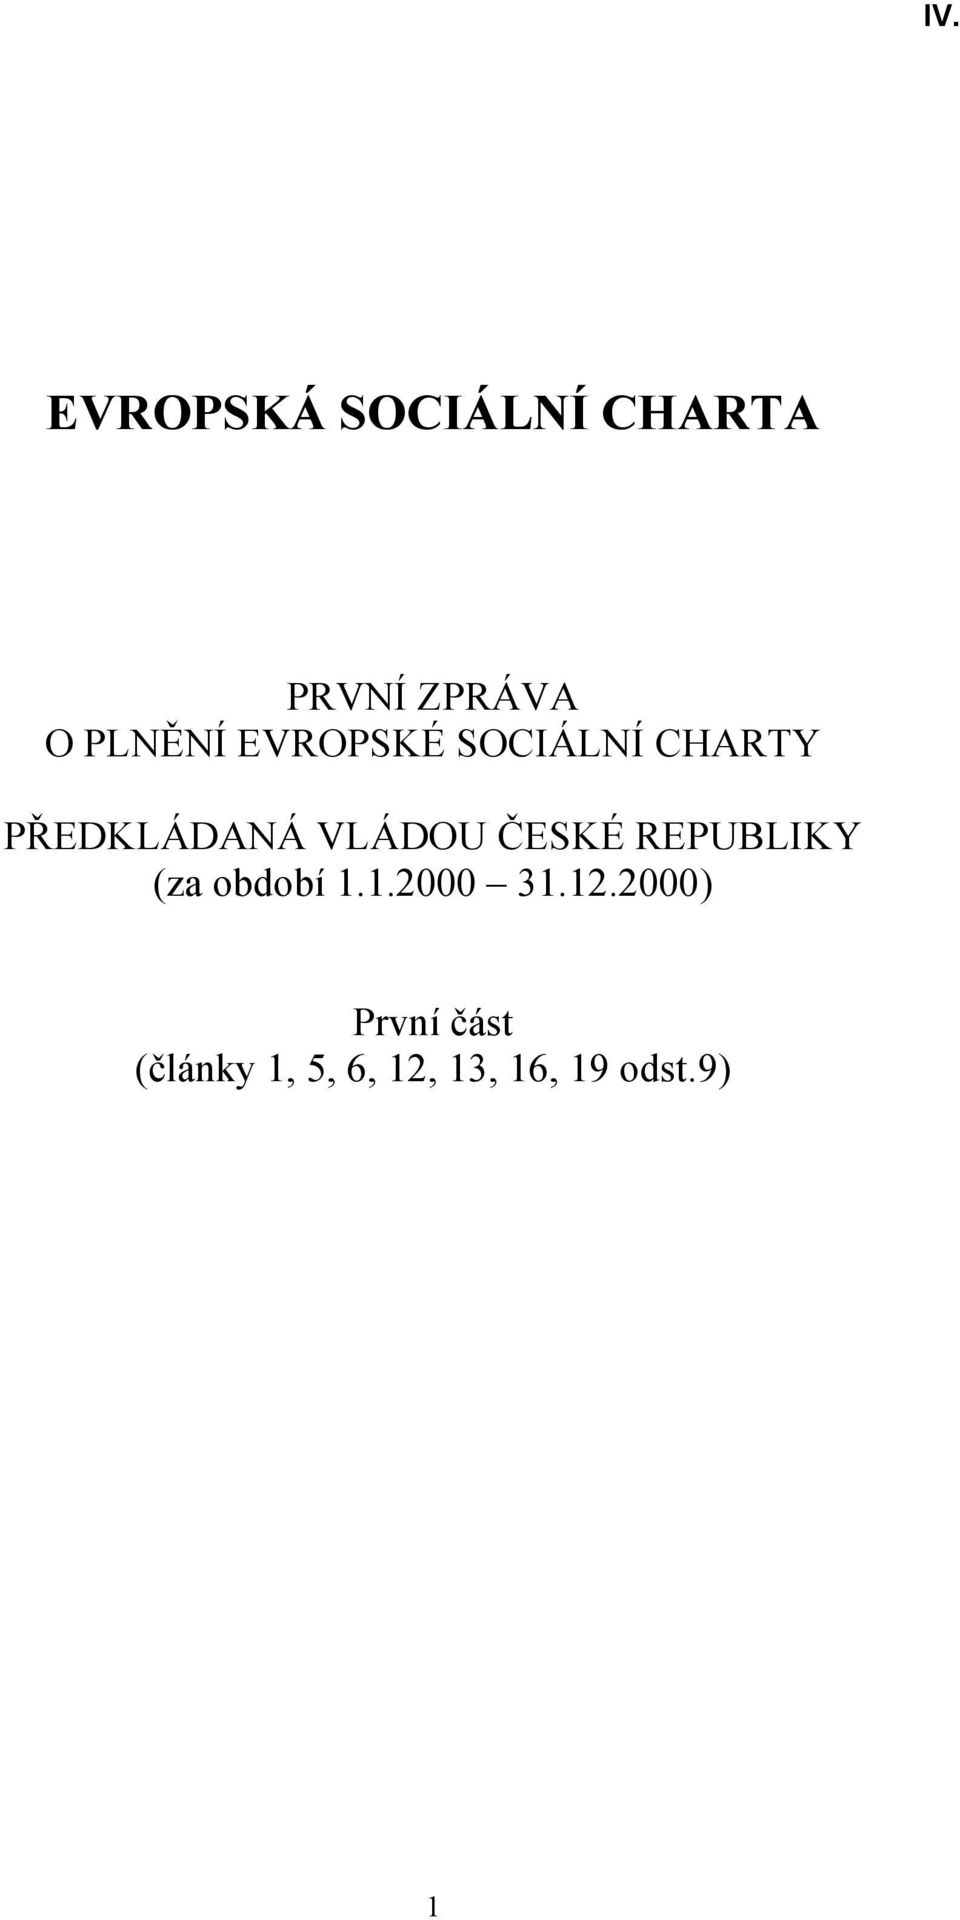 VLÁDOU ČESKÉ REPUBLIKY (za období 1.1.2000 31.12.